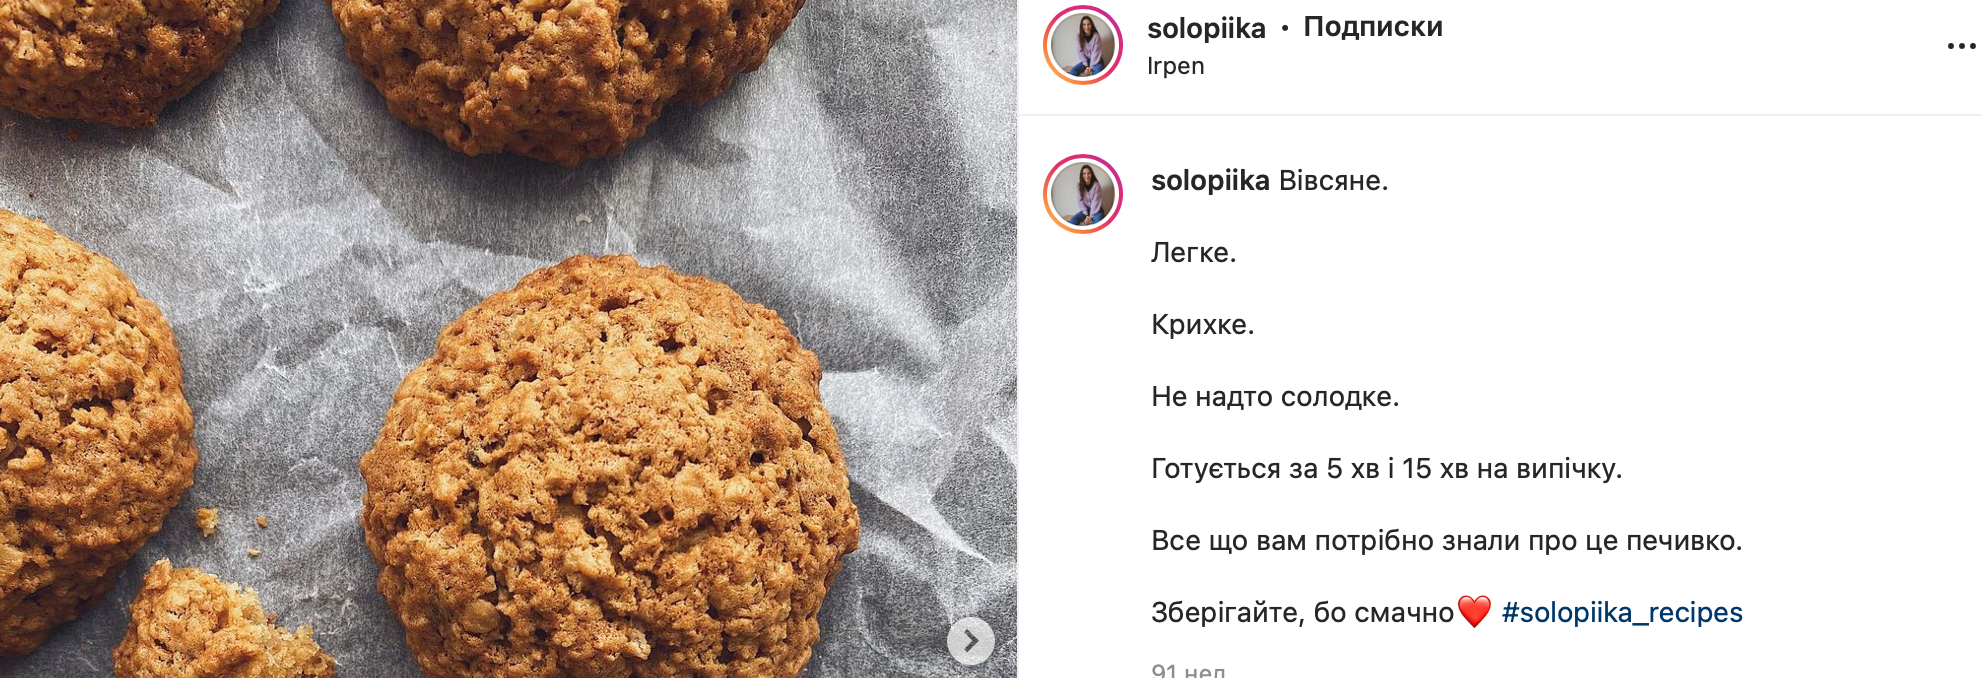 Рецепт печива від фудблогер